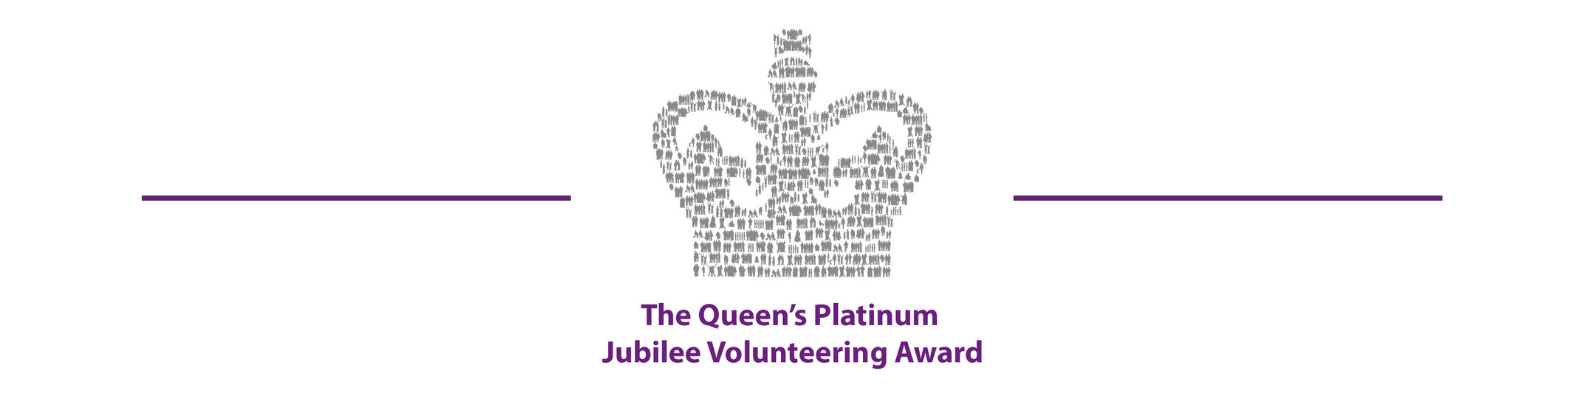 The Queen's Platinum Jubilee Volunteering Award Emblem